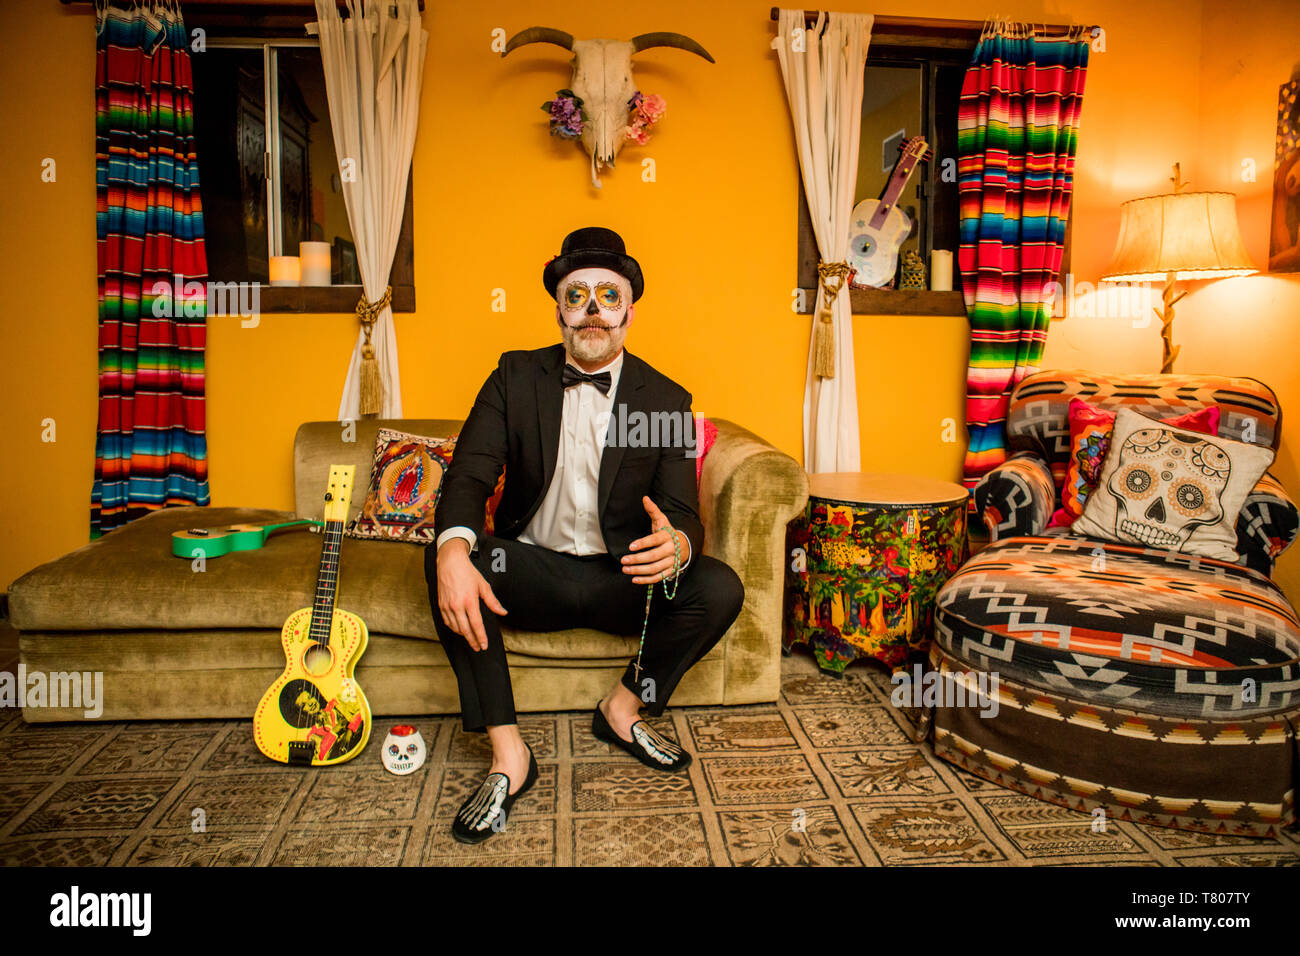 L'homme à Dia de los Muertos le maquillage et costume, fête le Jour des morts dans le désert, en Californie, États-Unis d'Amérique, Amérique du Nord Banque D'Images